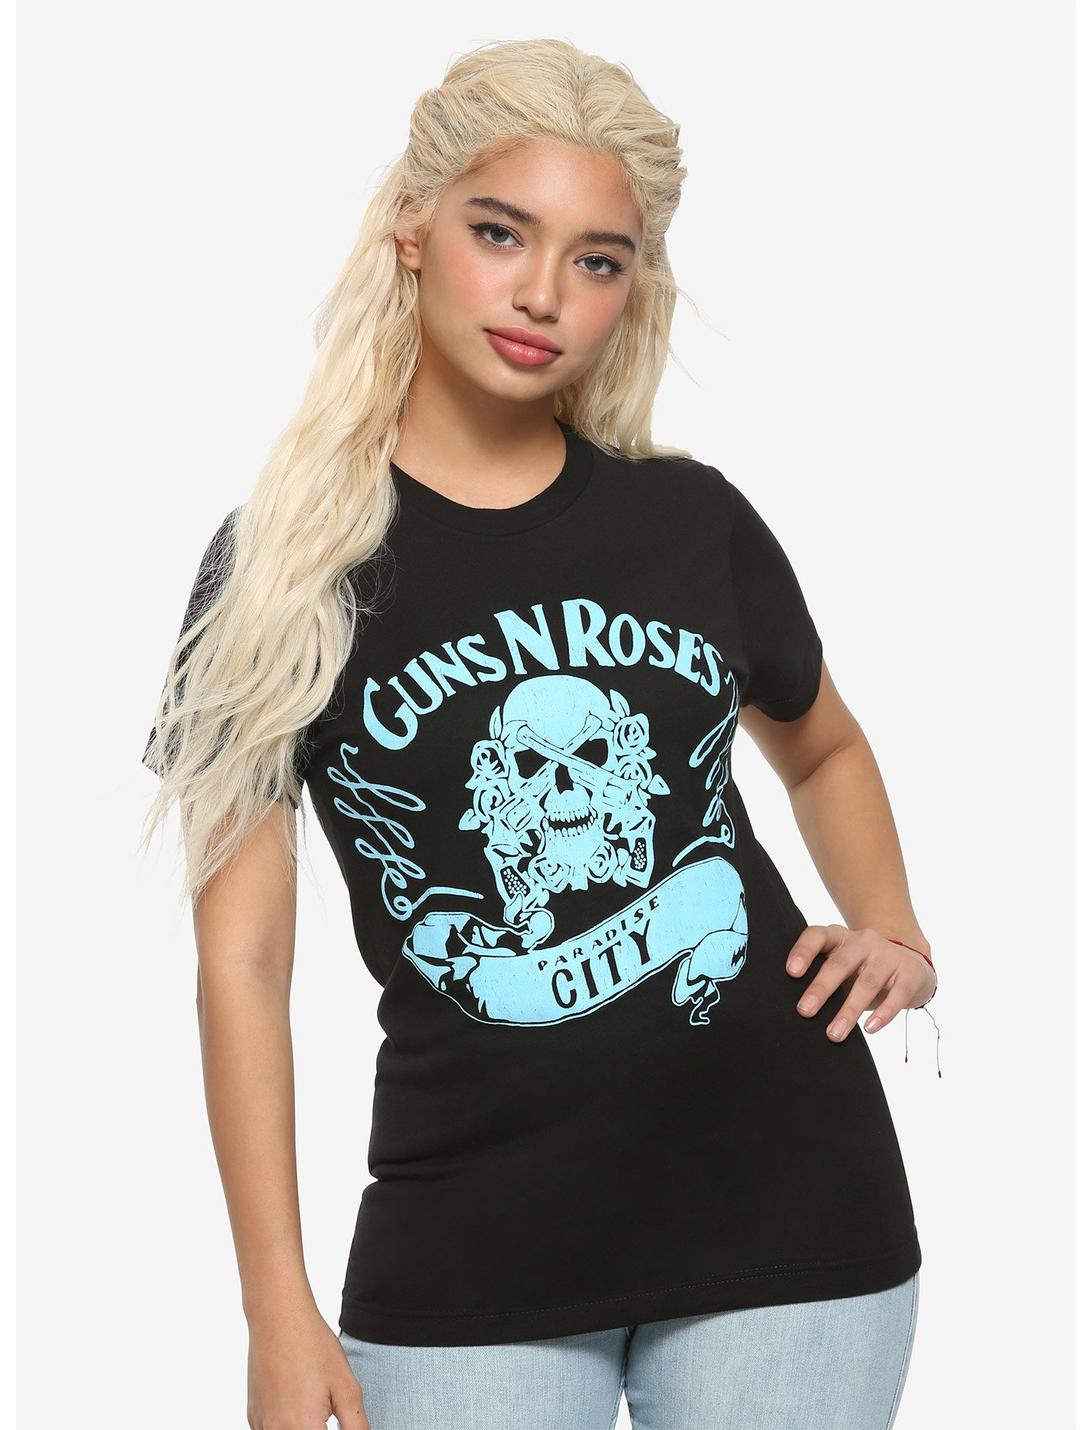 Guns N' Roses Paradise City Logo Girls T-Shirt, BLACK, hi-res